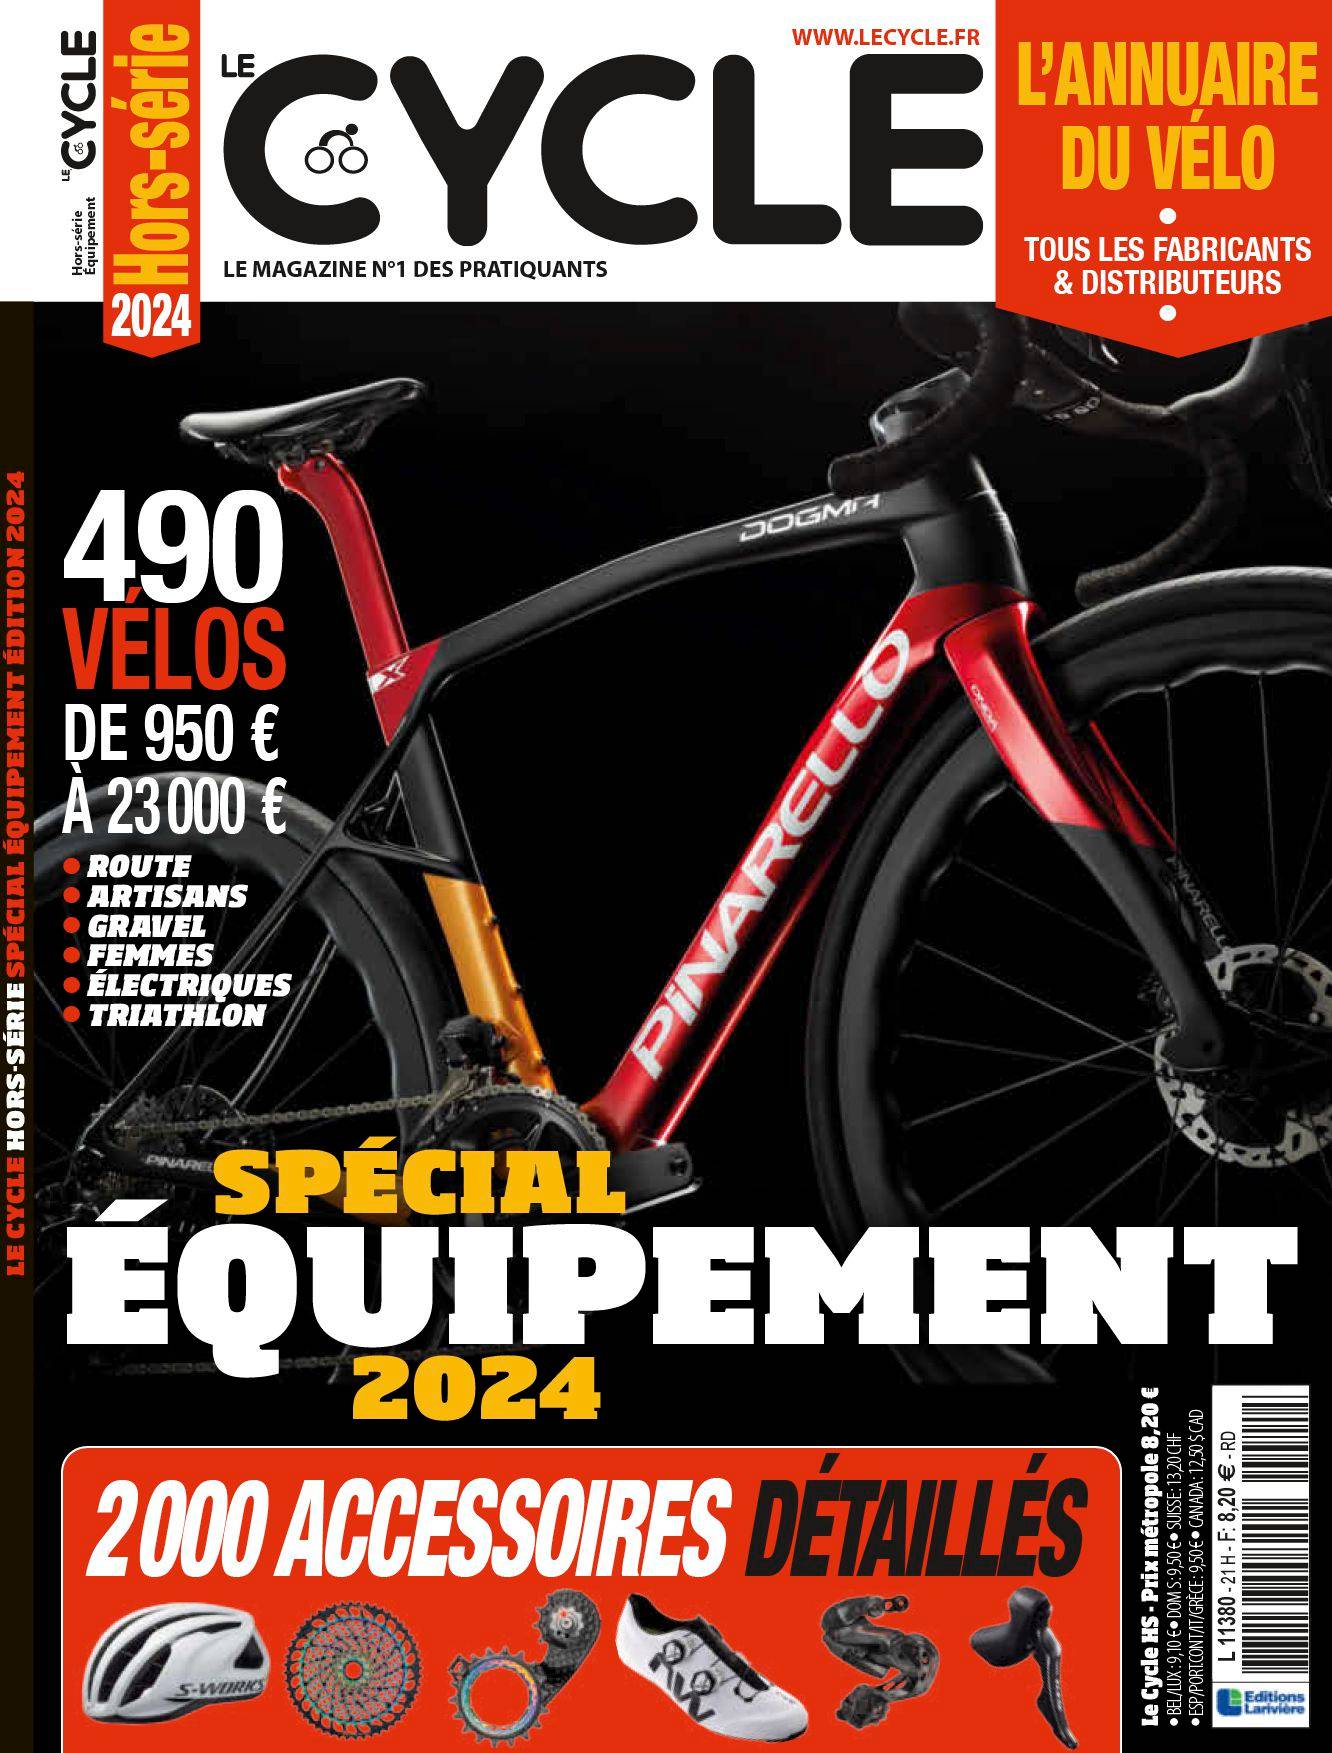 Abonnement magazine Le Cycle numérique - Boutique Larivière